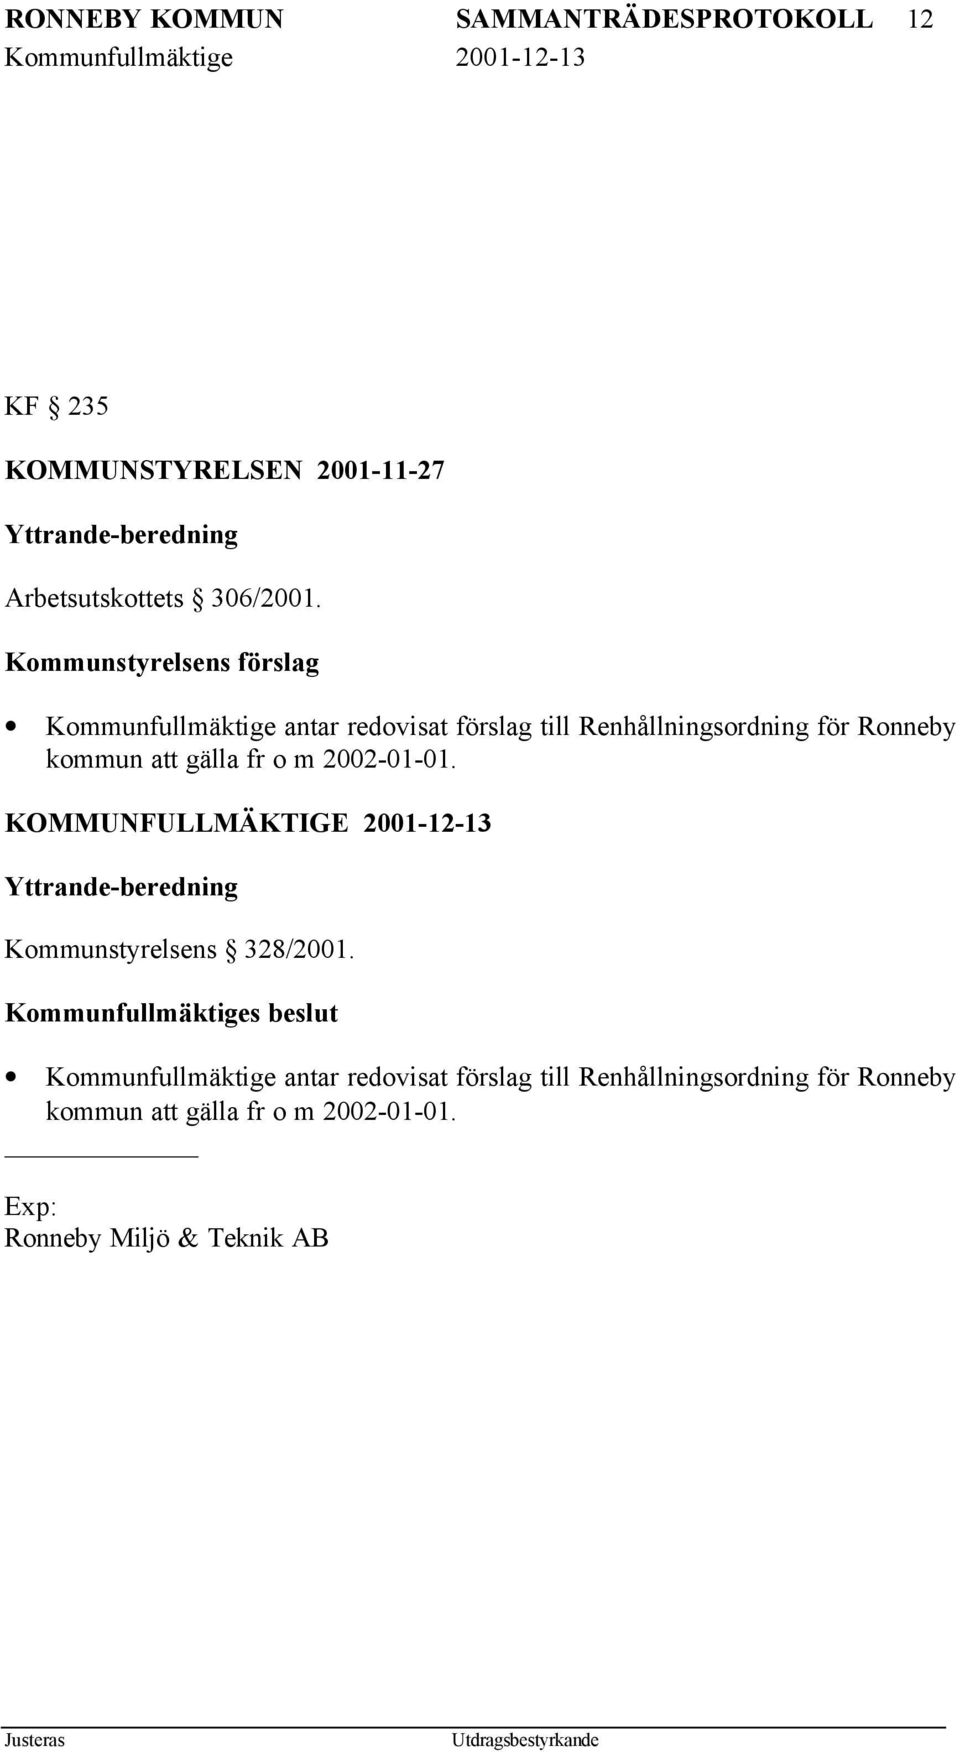 m 2002-01-01. KOMMUNFULLMÄKTIGE 2001-12-13 Yttrande-beredning Kommunstyrelsens 328/2001.